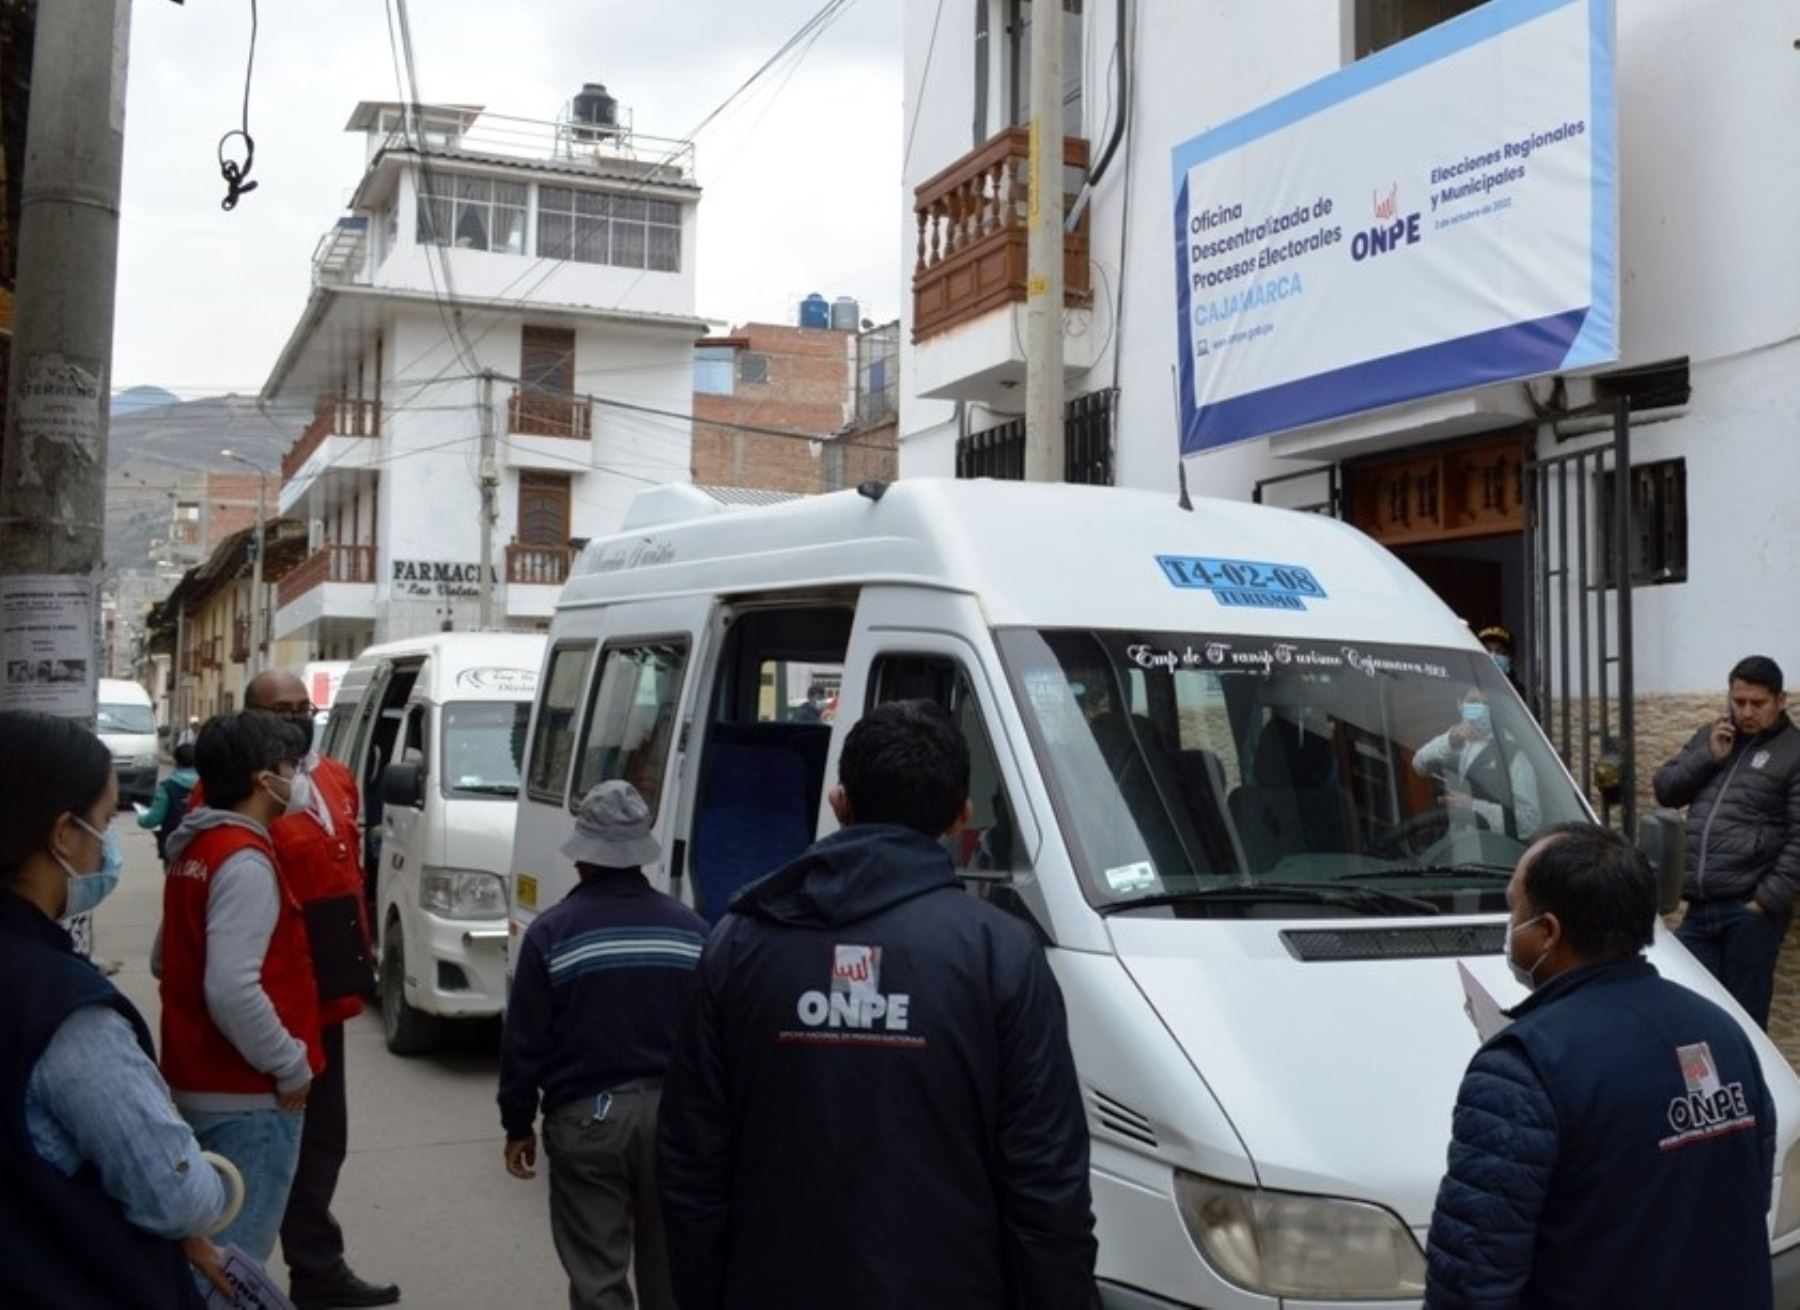 La ODPE Cajamarca inició la entrega de material electoral y esta se desarrolla sin problemas en los locales de votación de localidades alejadas en Cajamarca. Foto: Eduard Lozano.